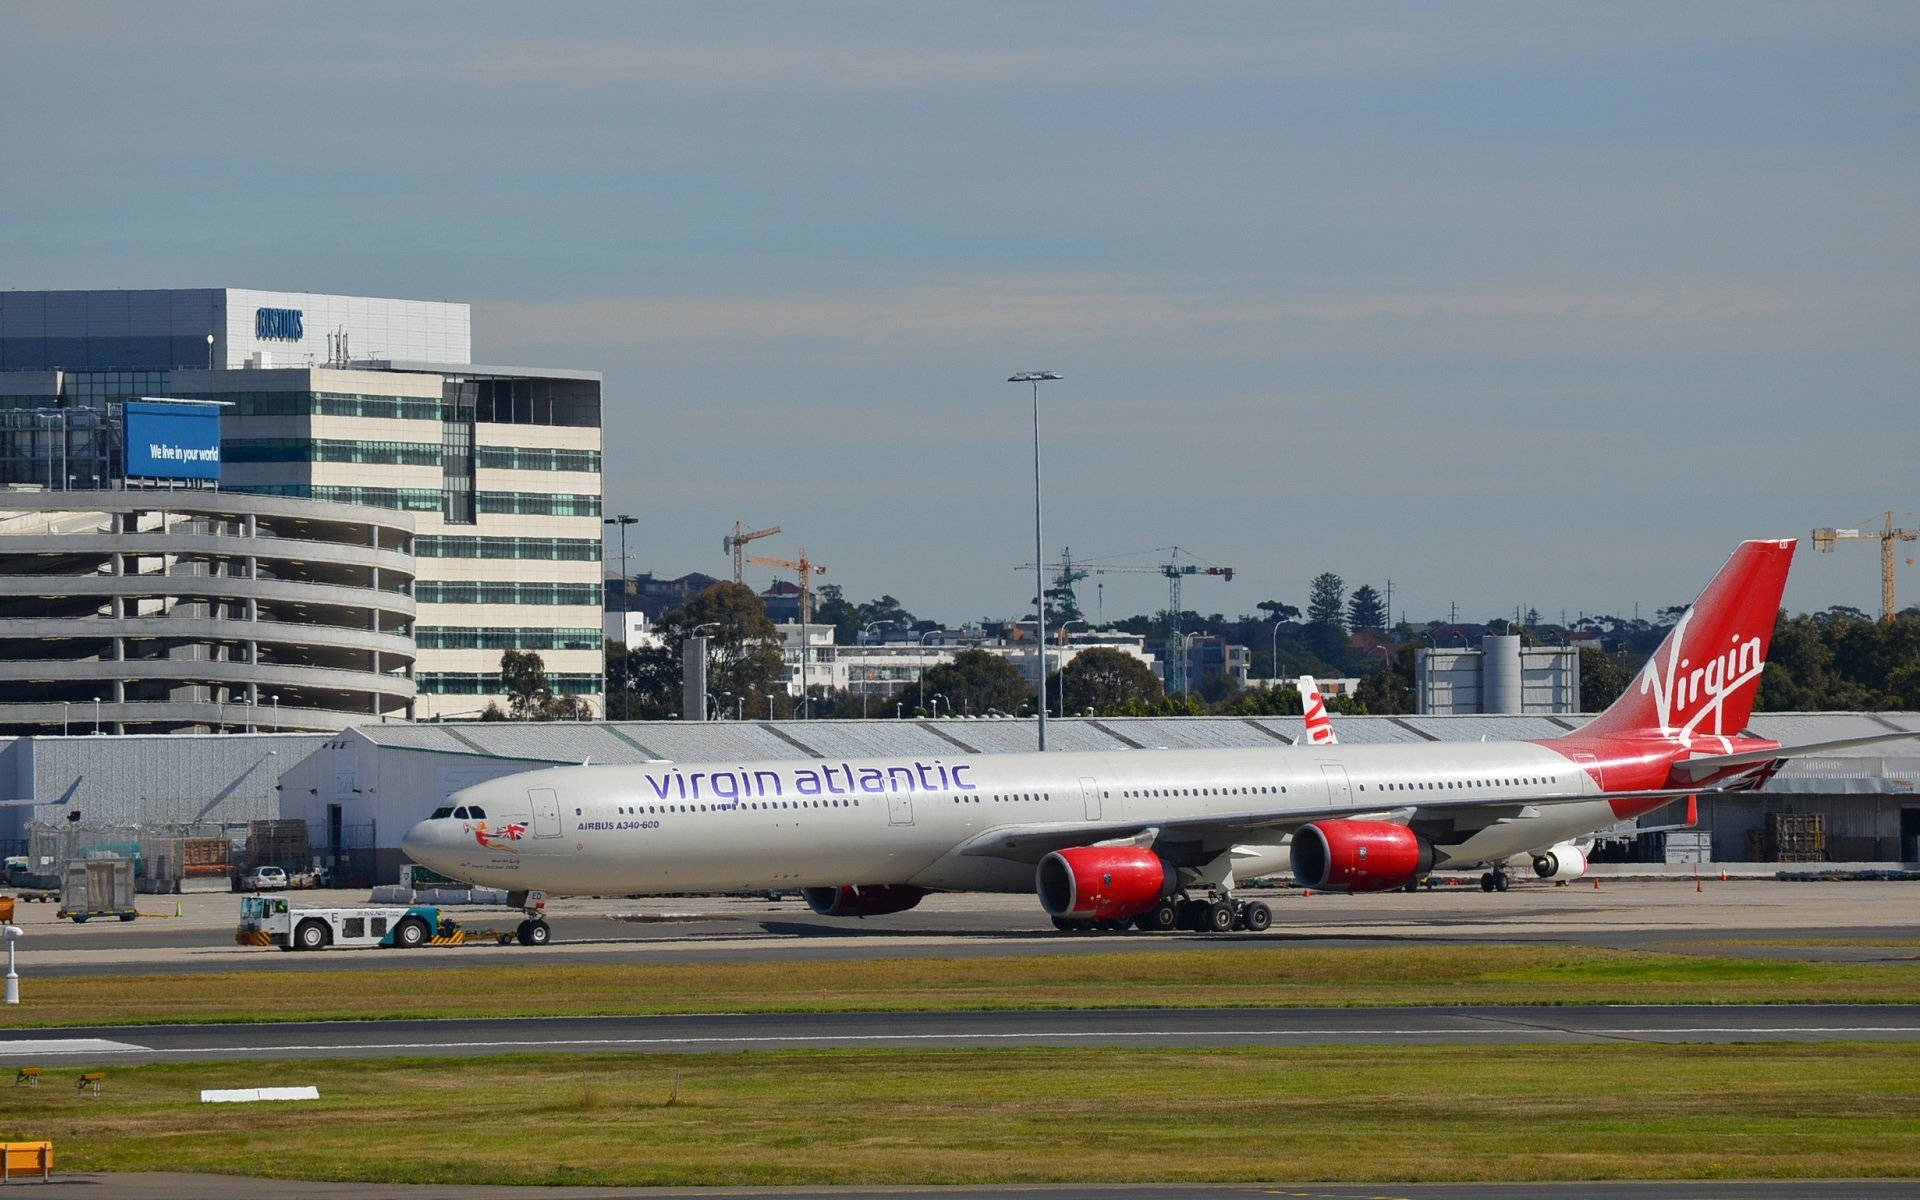 Aviónde Virgin Atlantic Preparado Para Abordar Fondo de pantalla